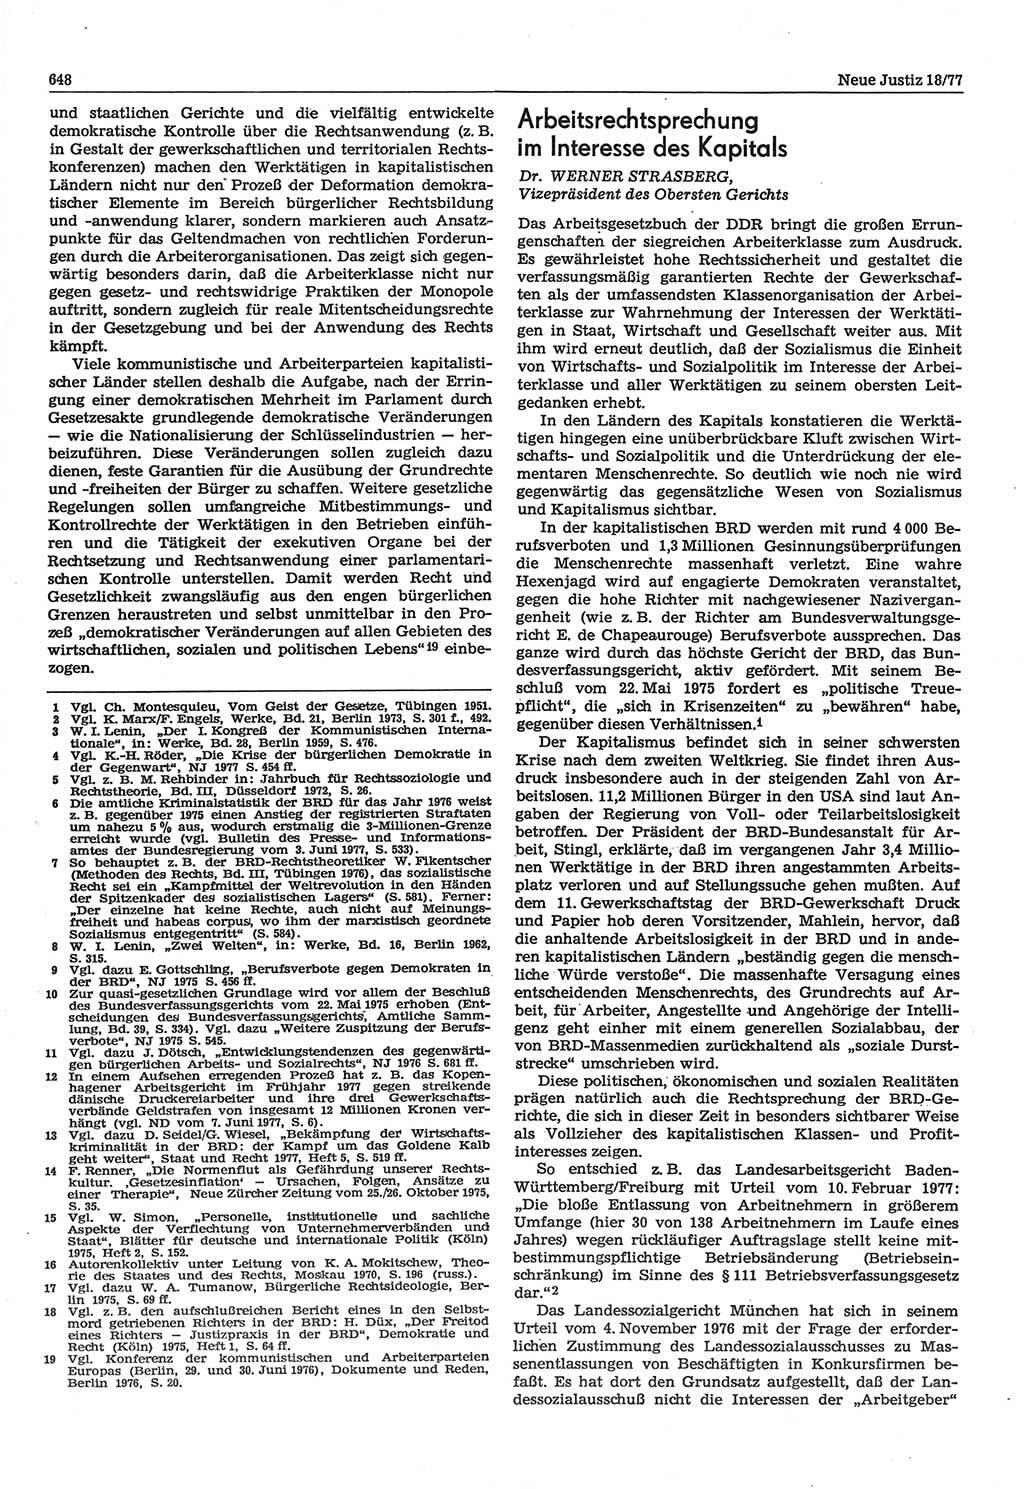 Neue Justiz (NJ), Zeitschrift für Recht und Rechtswissenschaft-Zeitschrift, sozialistisches Recht und Gesetzlichkeit, 31. Jahrgang 1977, Seite 648 (NJ DDR 1977, S. 648)